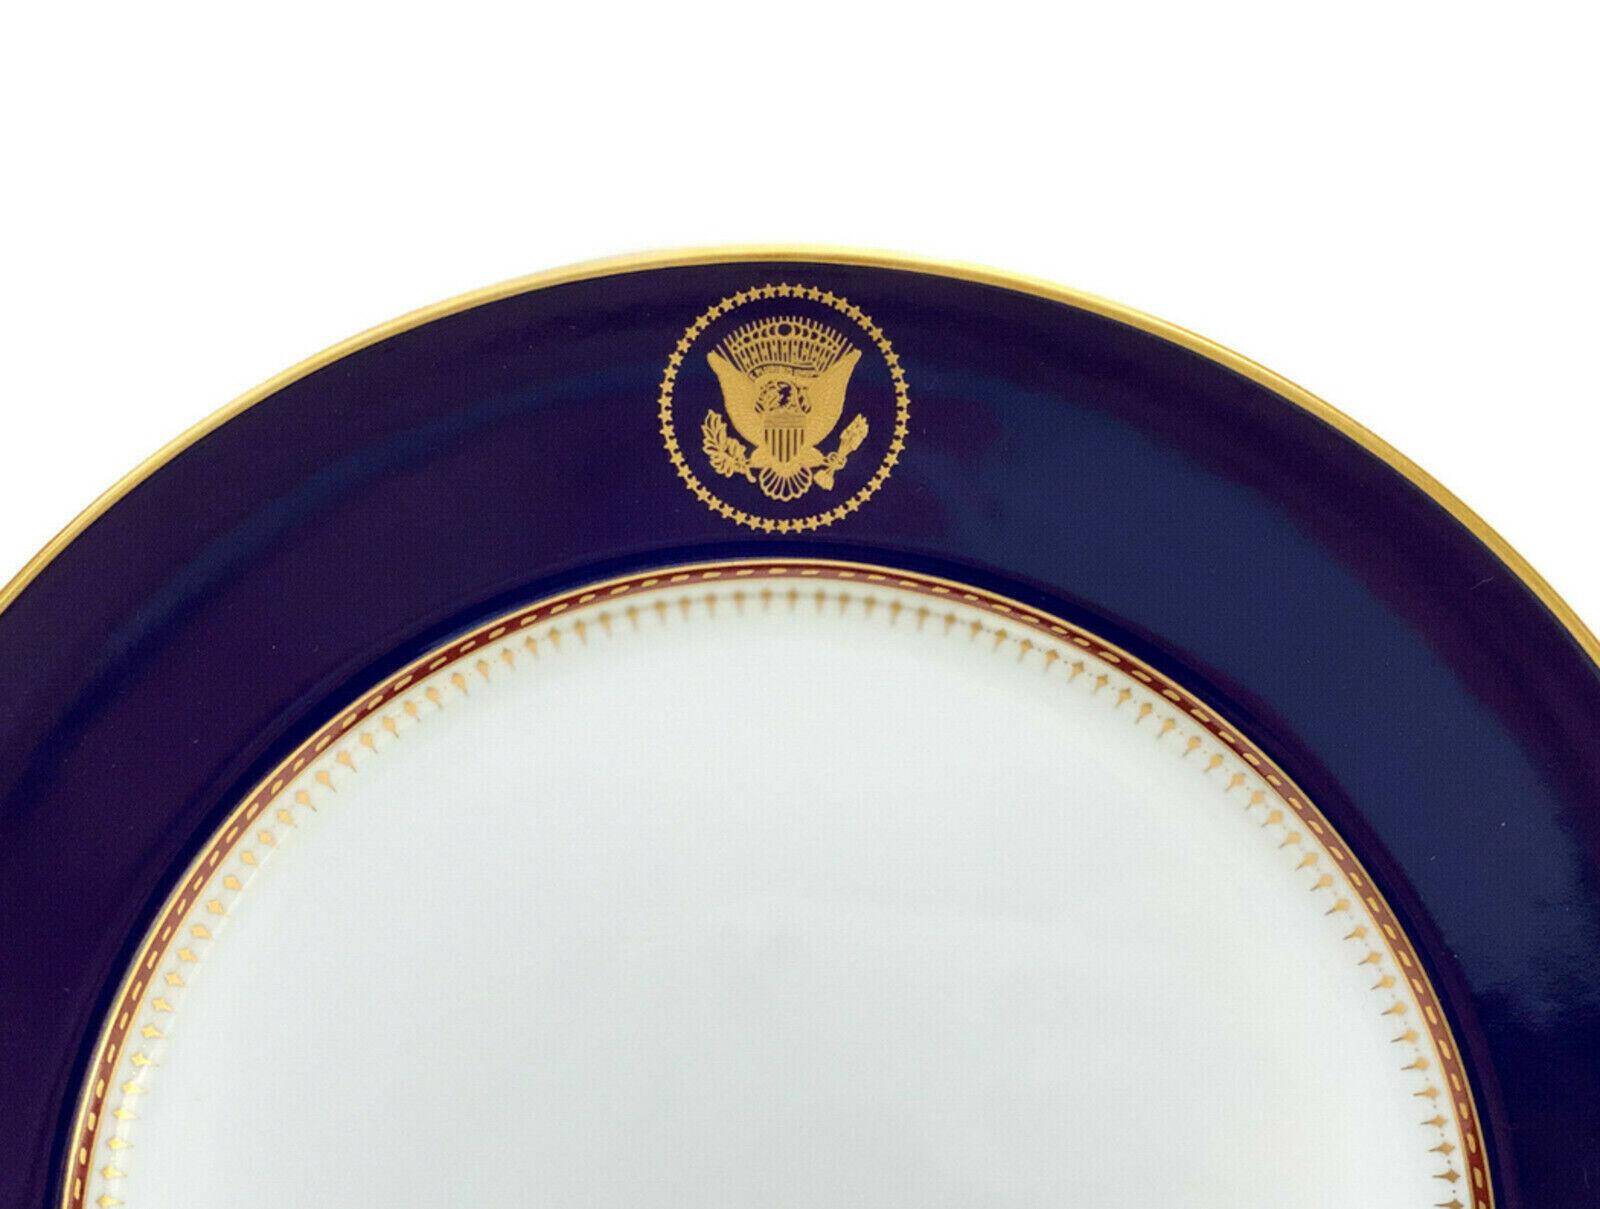 Teller für das Abendessen im Weißen Haus von Fitz und Floyd Reagan, 1983

Kobaltblauer Grund und vergoldetes Großes Siegel der Vereinigten Staaten auf den oberen mittleren Rändern. Vergoldete Akzente an den Rändern und am inneren Rand mit einem